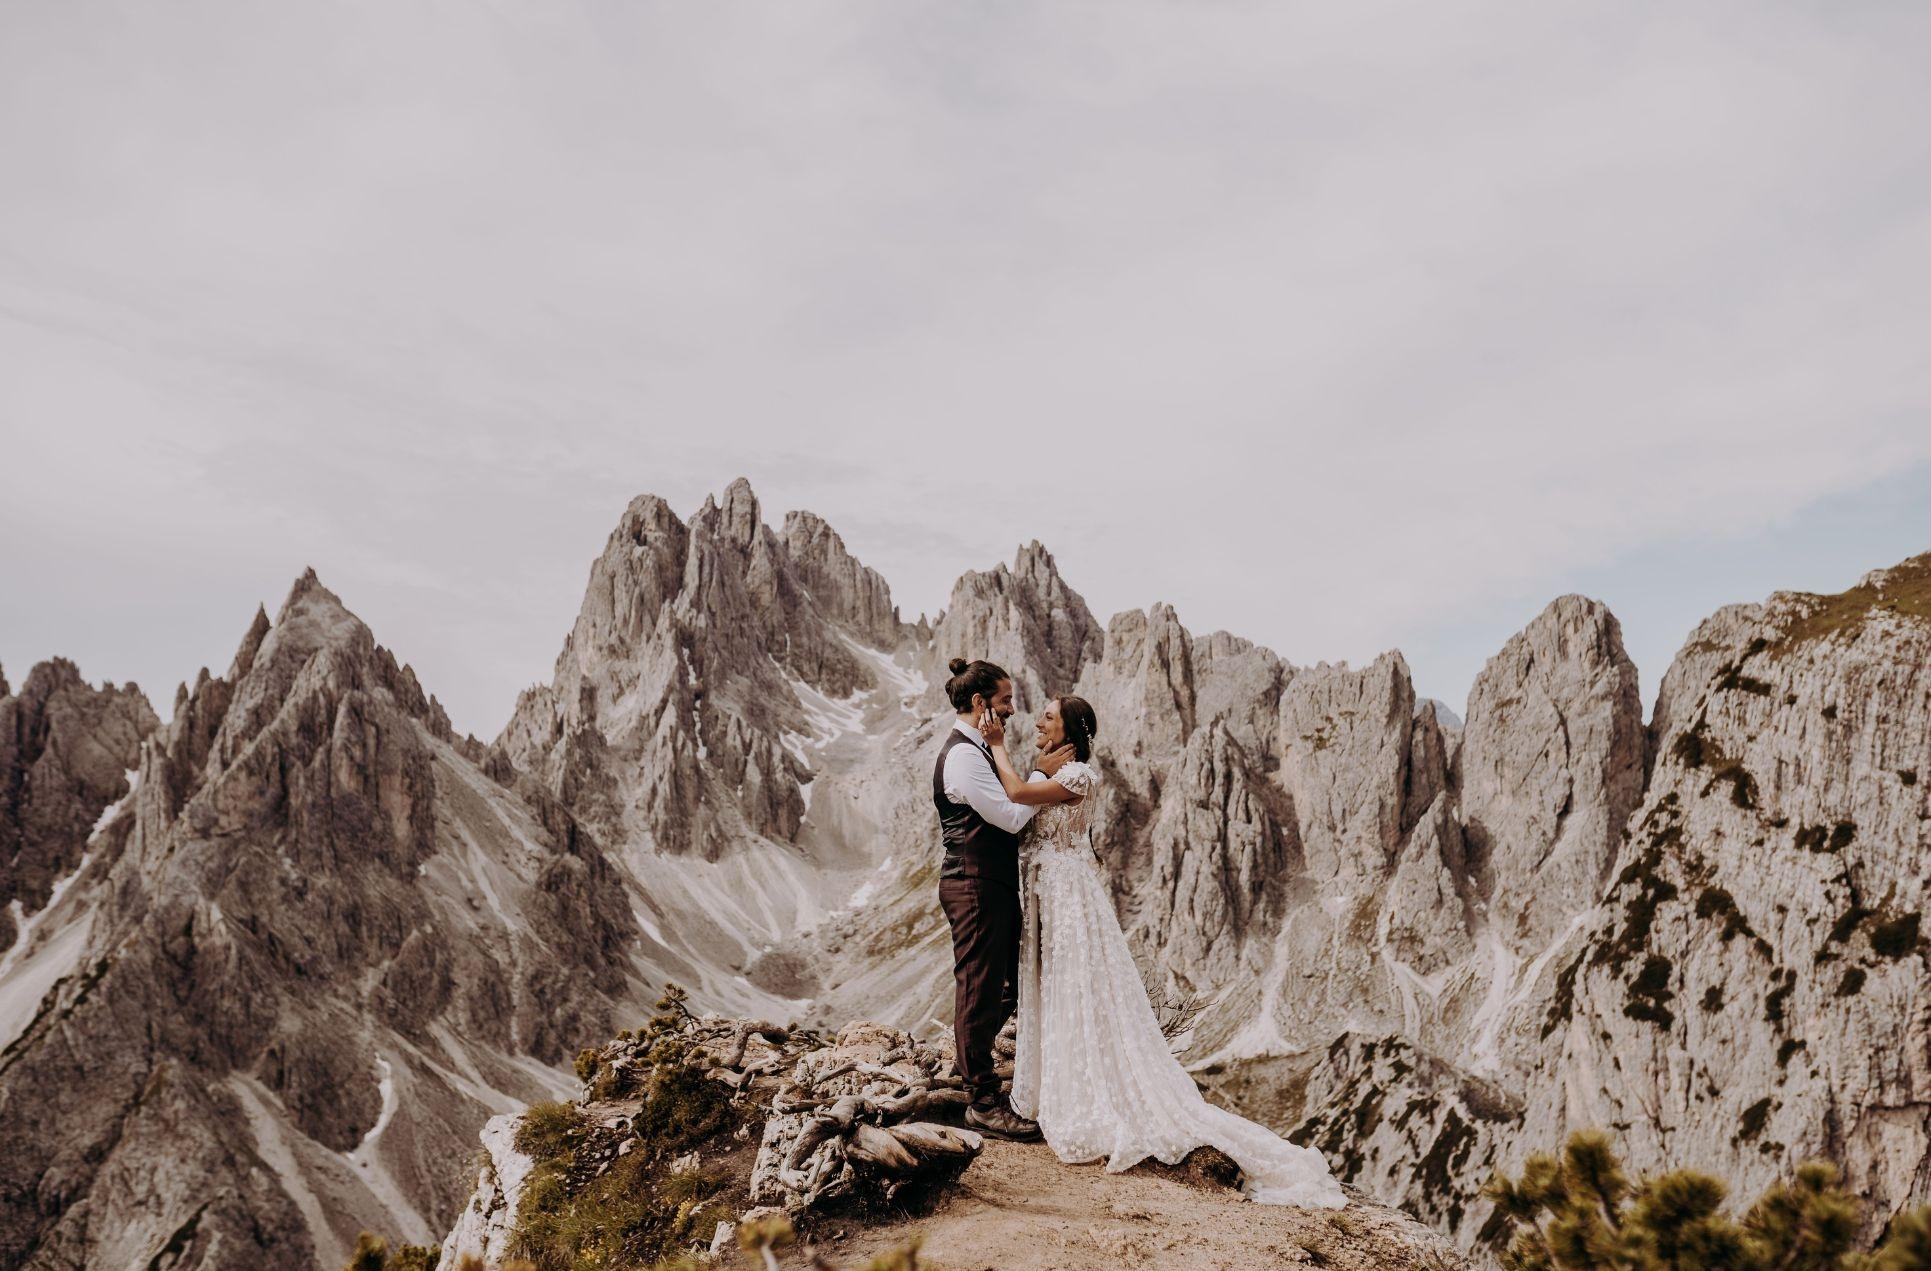 Wedding dolomites: High altitude wedding dolomite